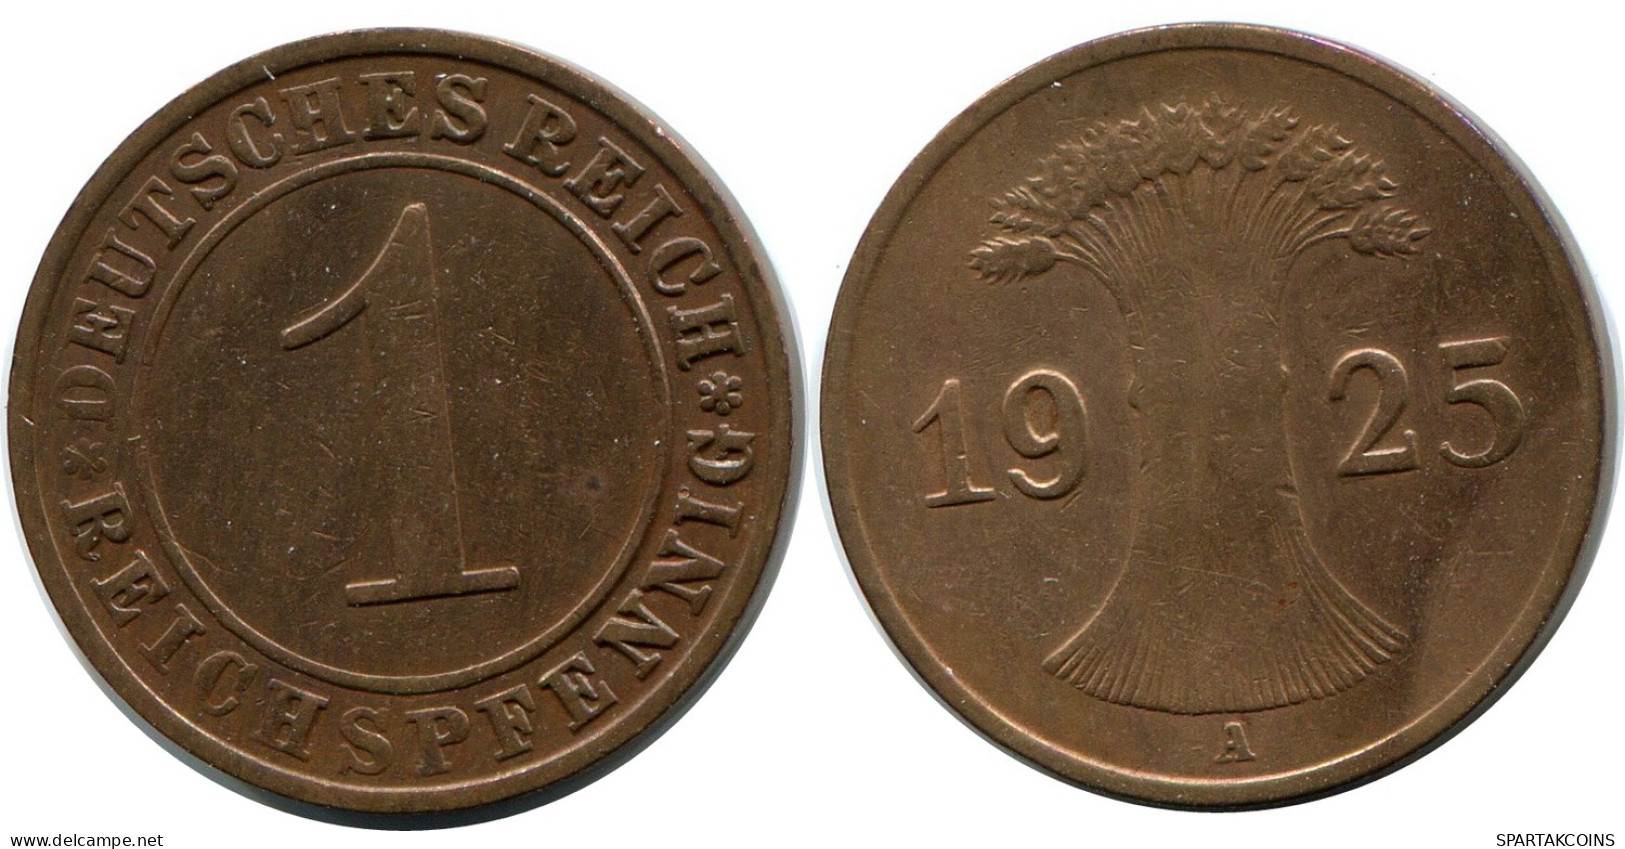 1 REICHSPFENNIG 1925 A GERMANY Coin #DB774.U - 1 Renten- & 1 Reichspfennig